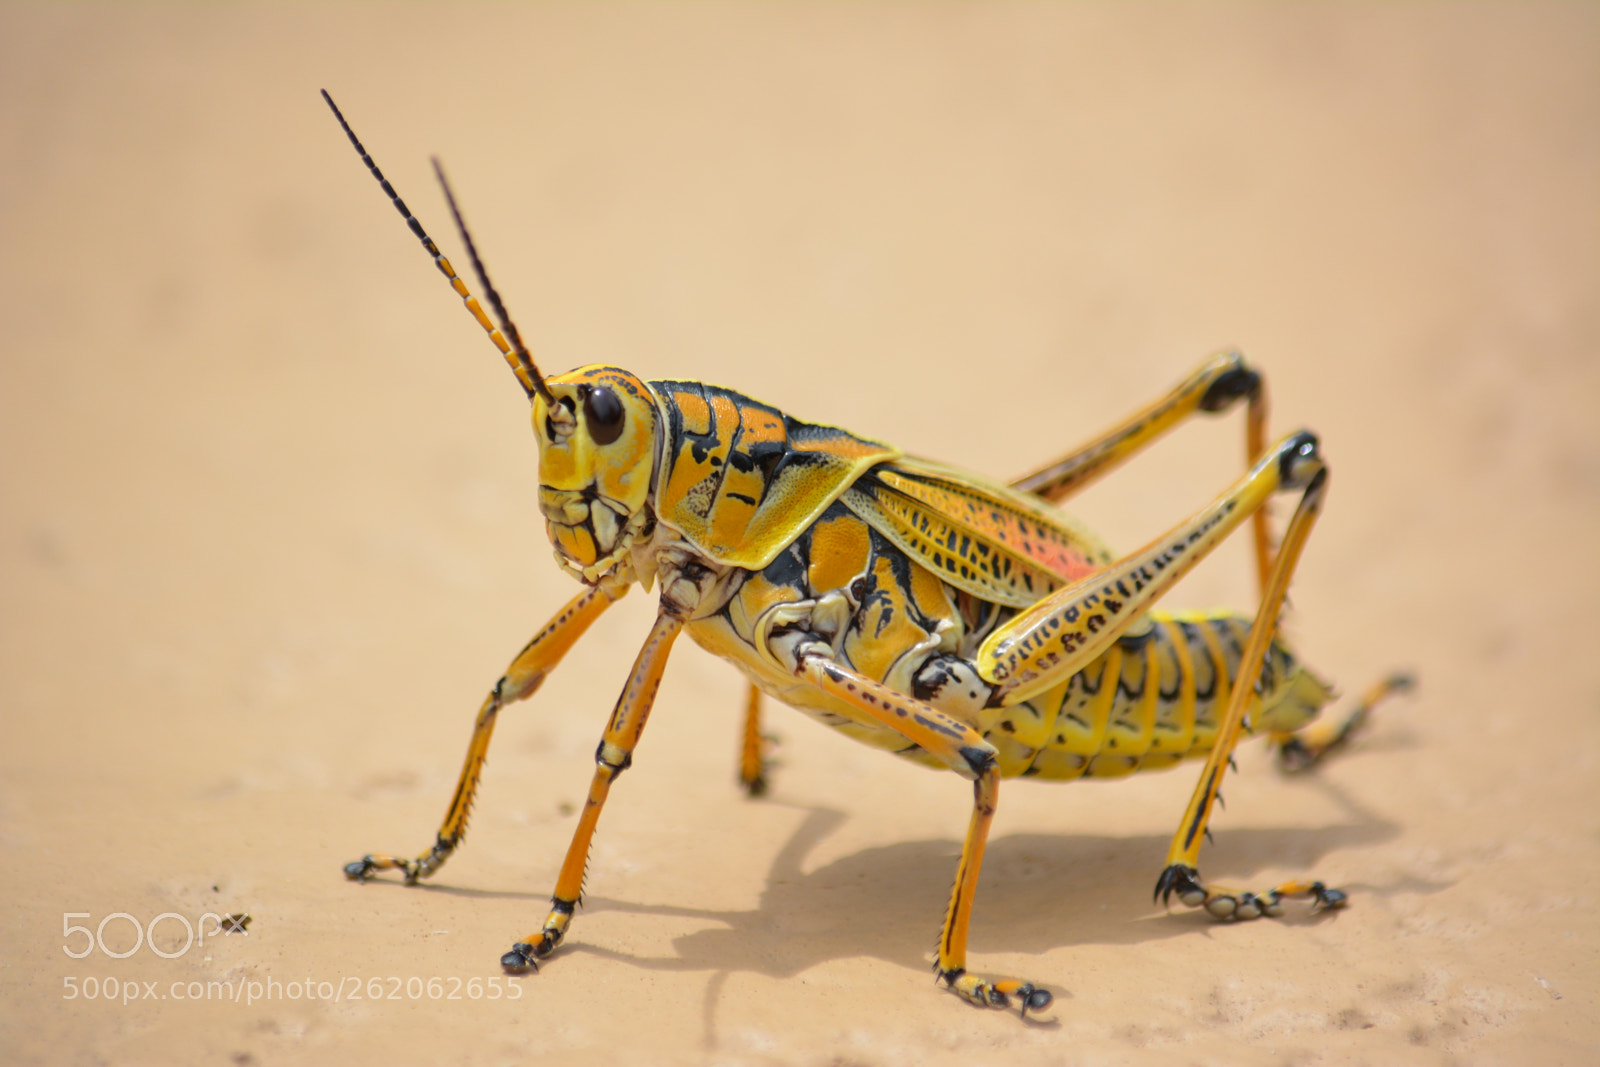 Nikon AF-S DX Nikkor 55-300mm F4.5-5.6G ED VR sample photo. Colorful cricket photography